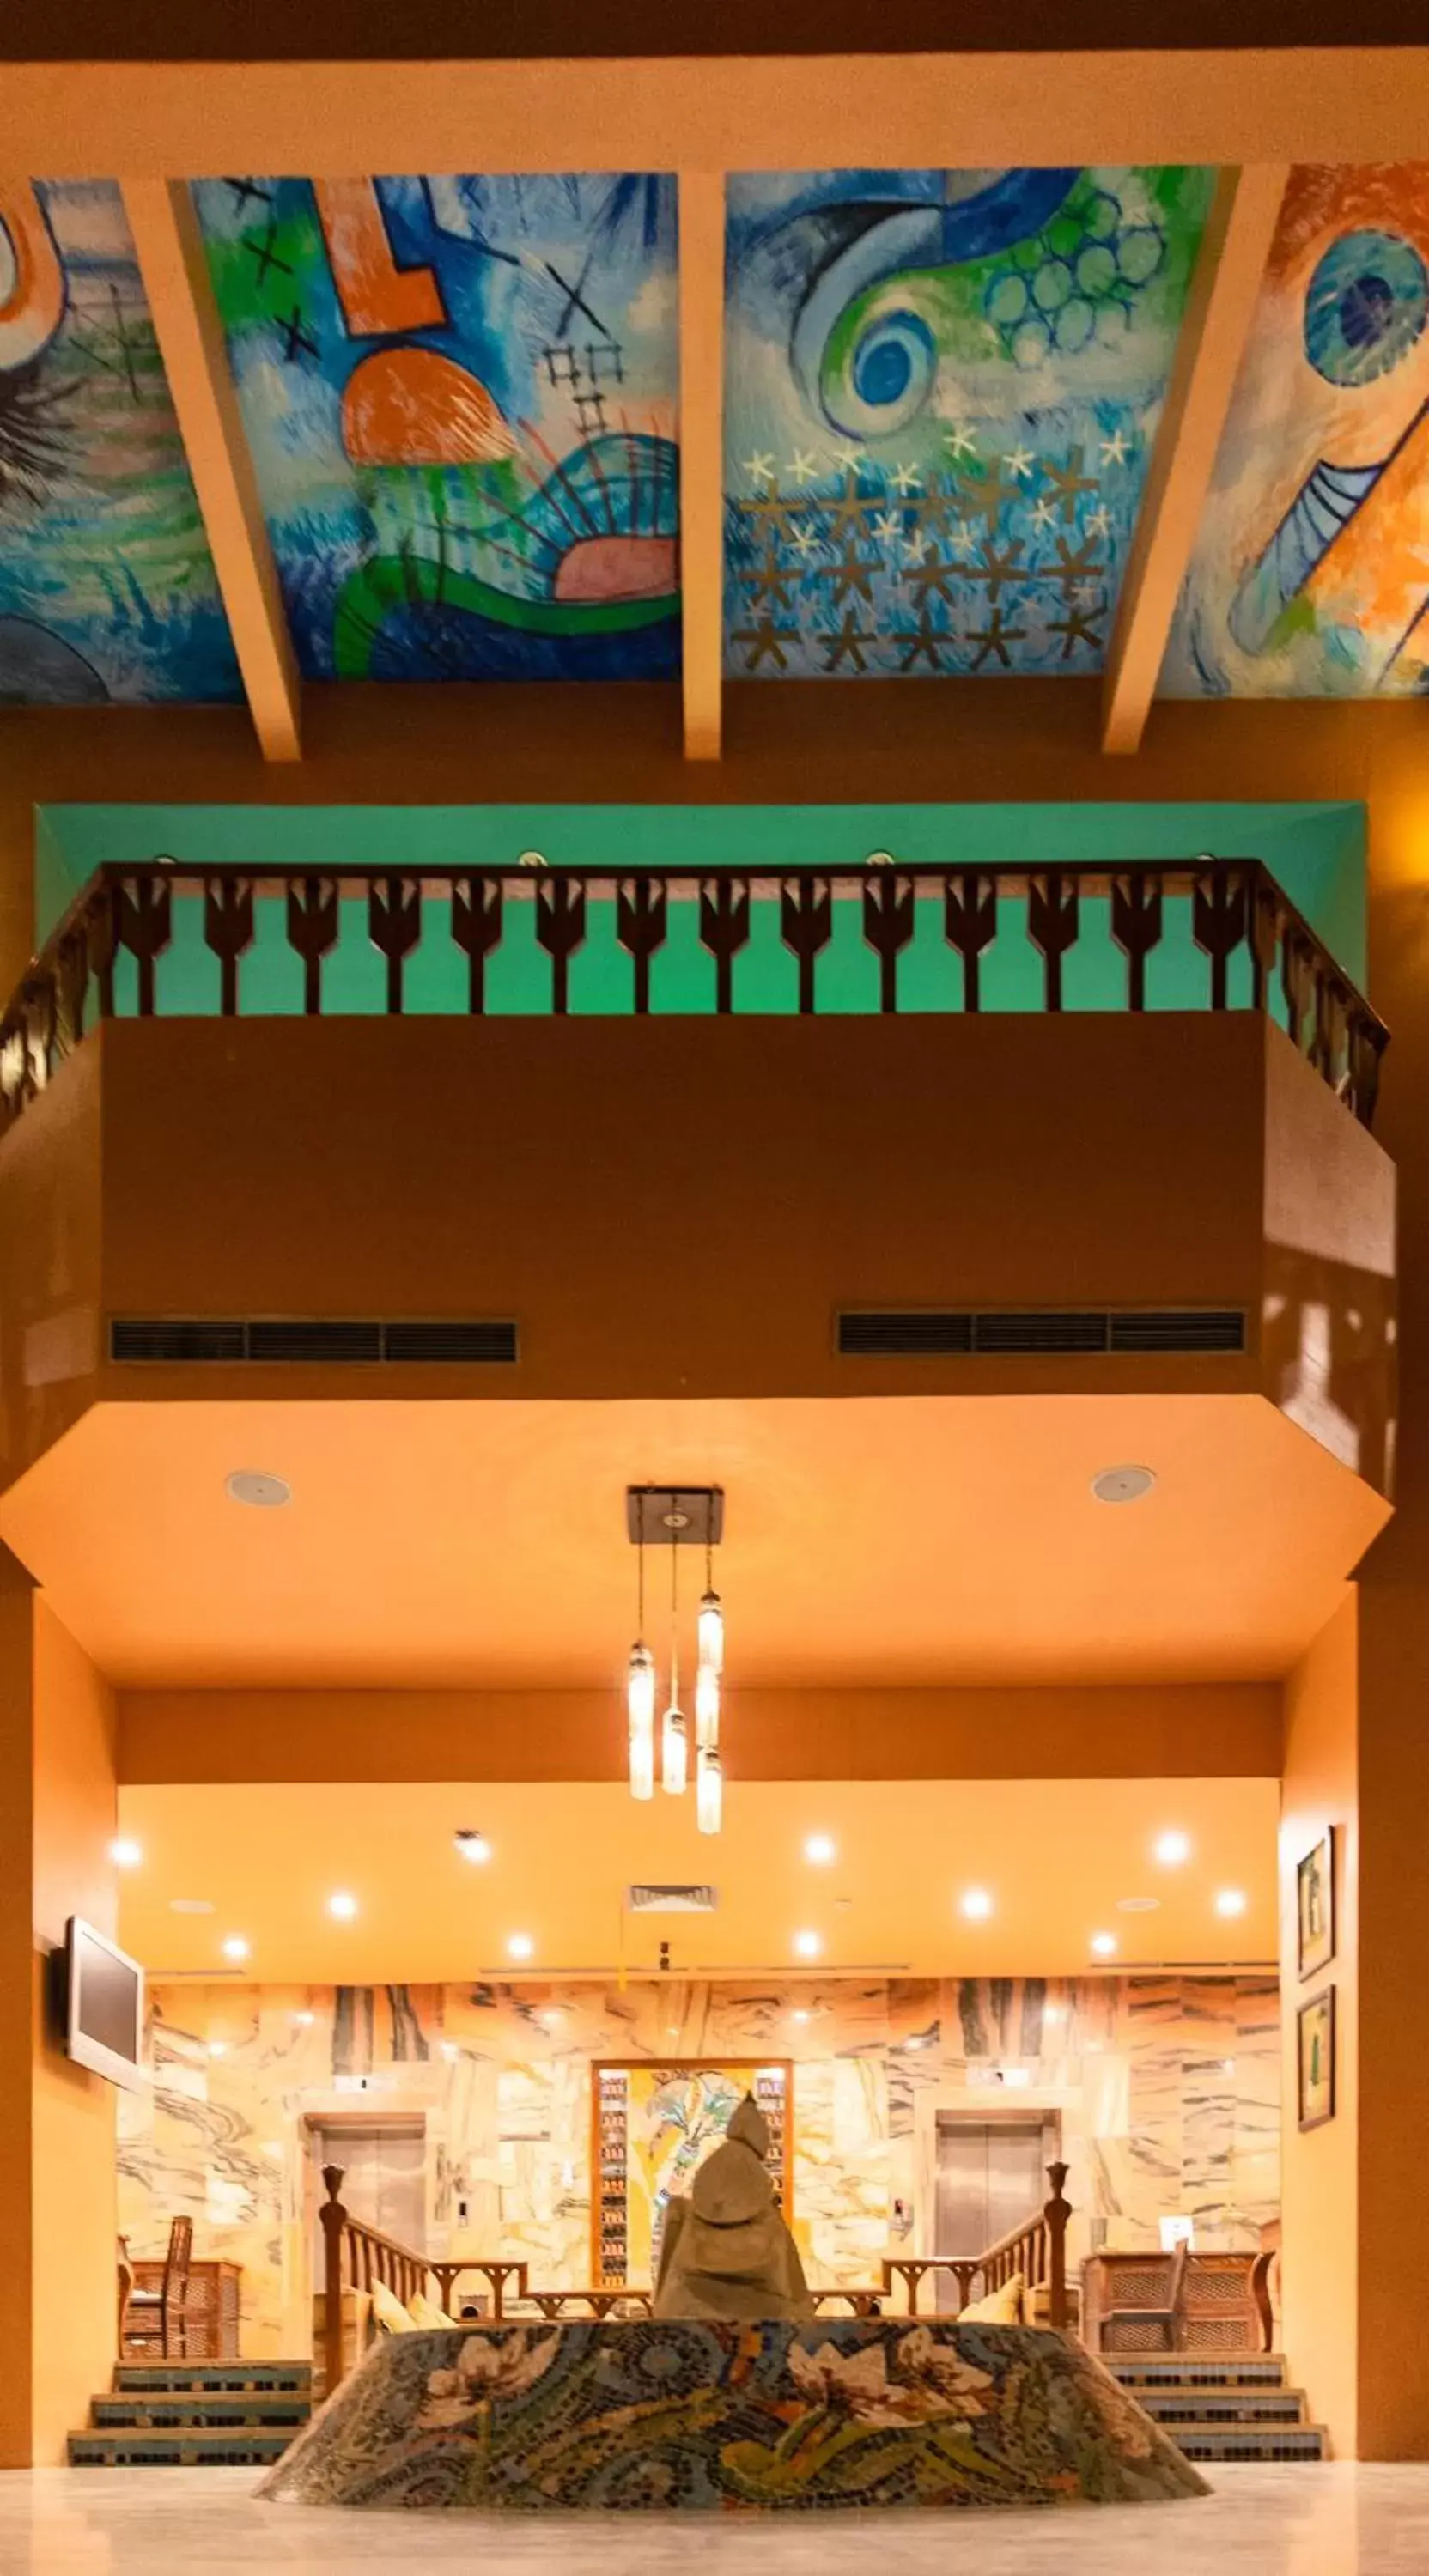 Lobby or reception in Basma Hotel Aswan